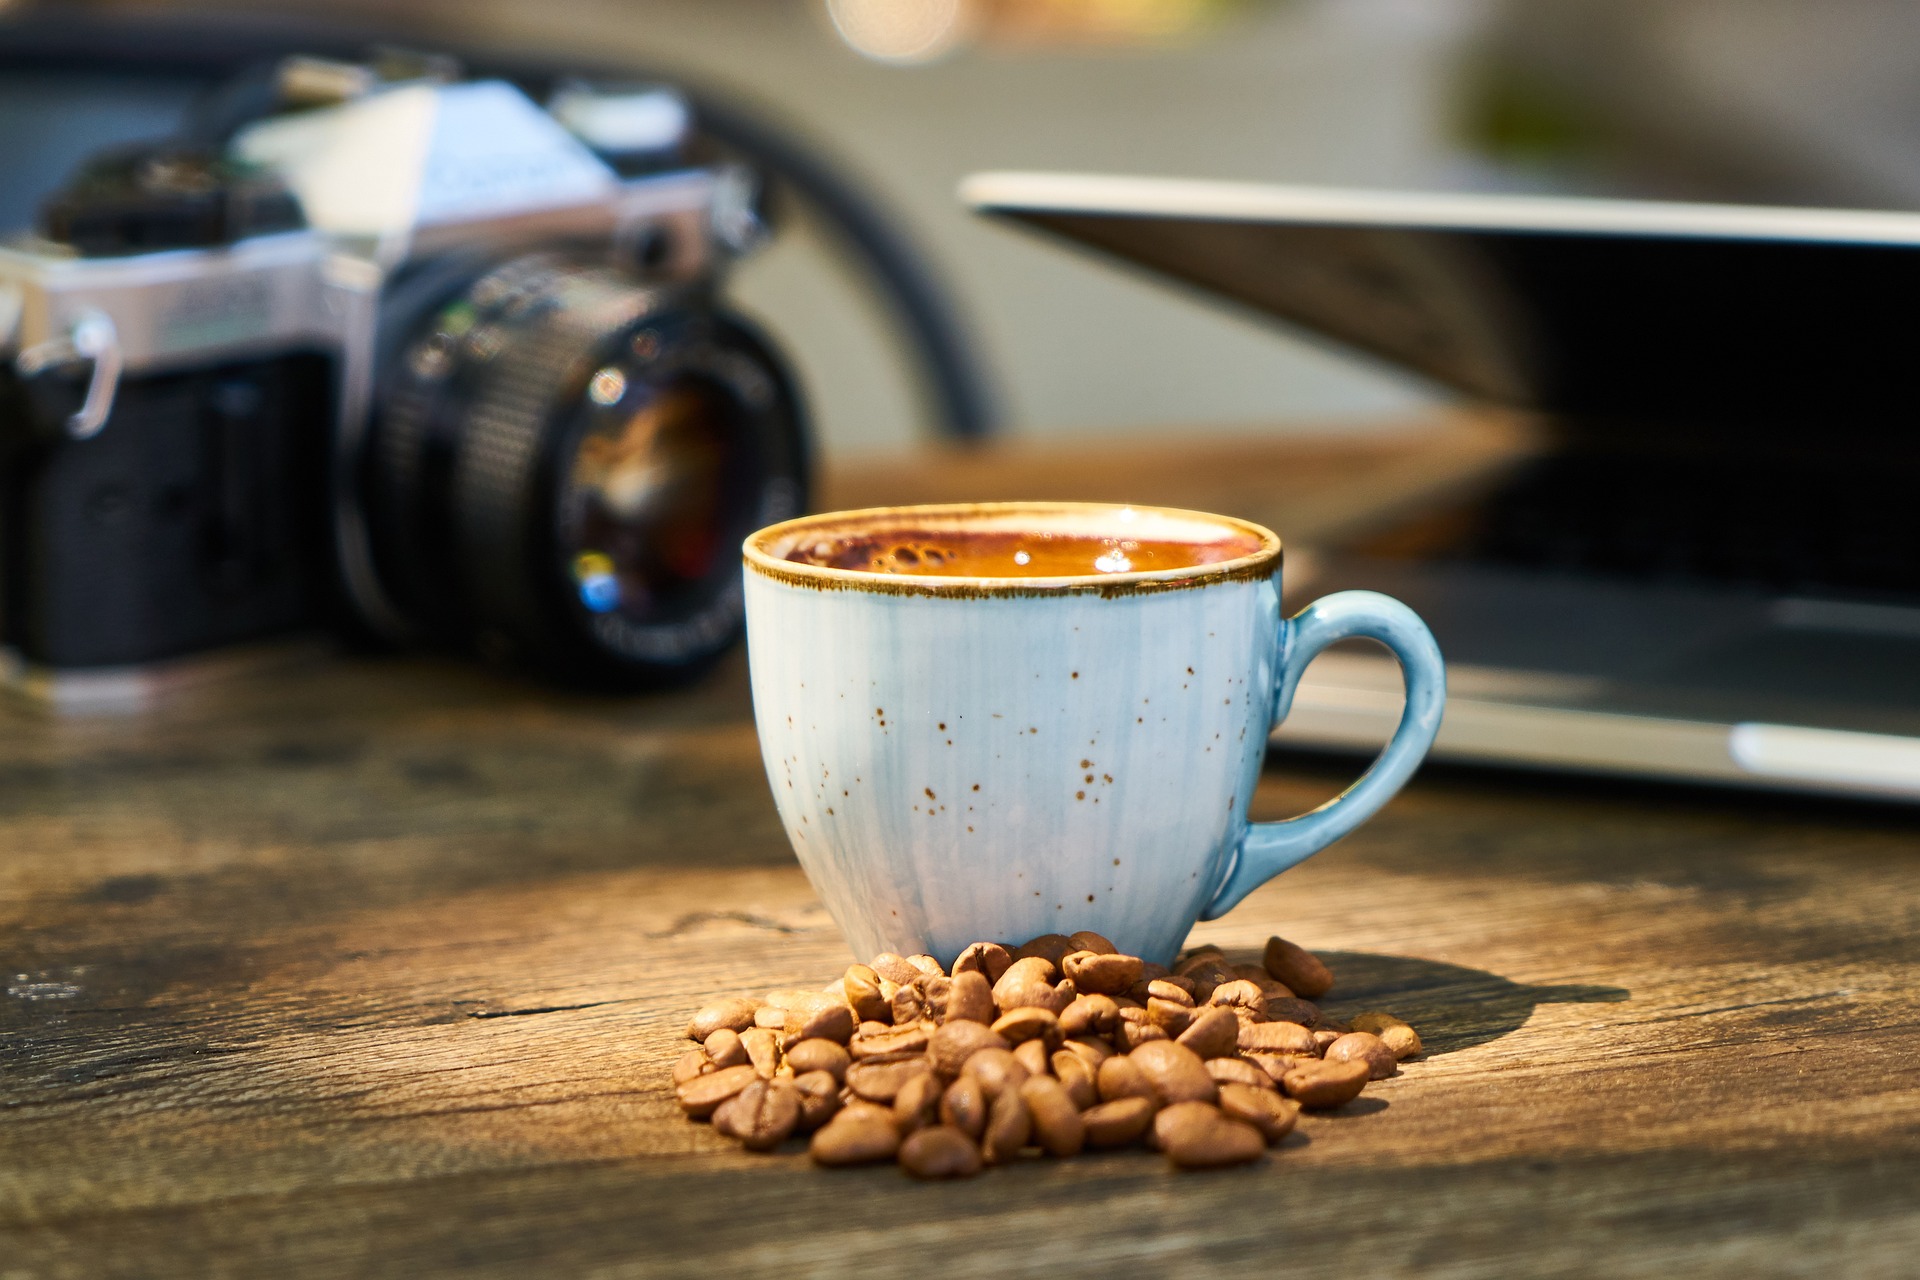 Le 3 migliori marche macchine caffè: qualità e gusto a confronto, SAIDA Gusto Espresso